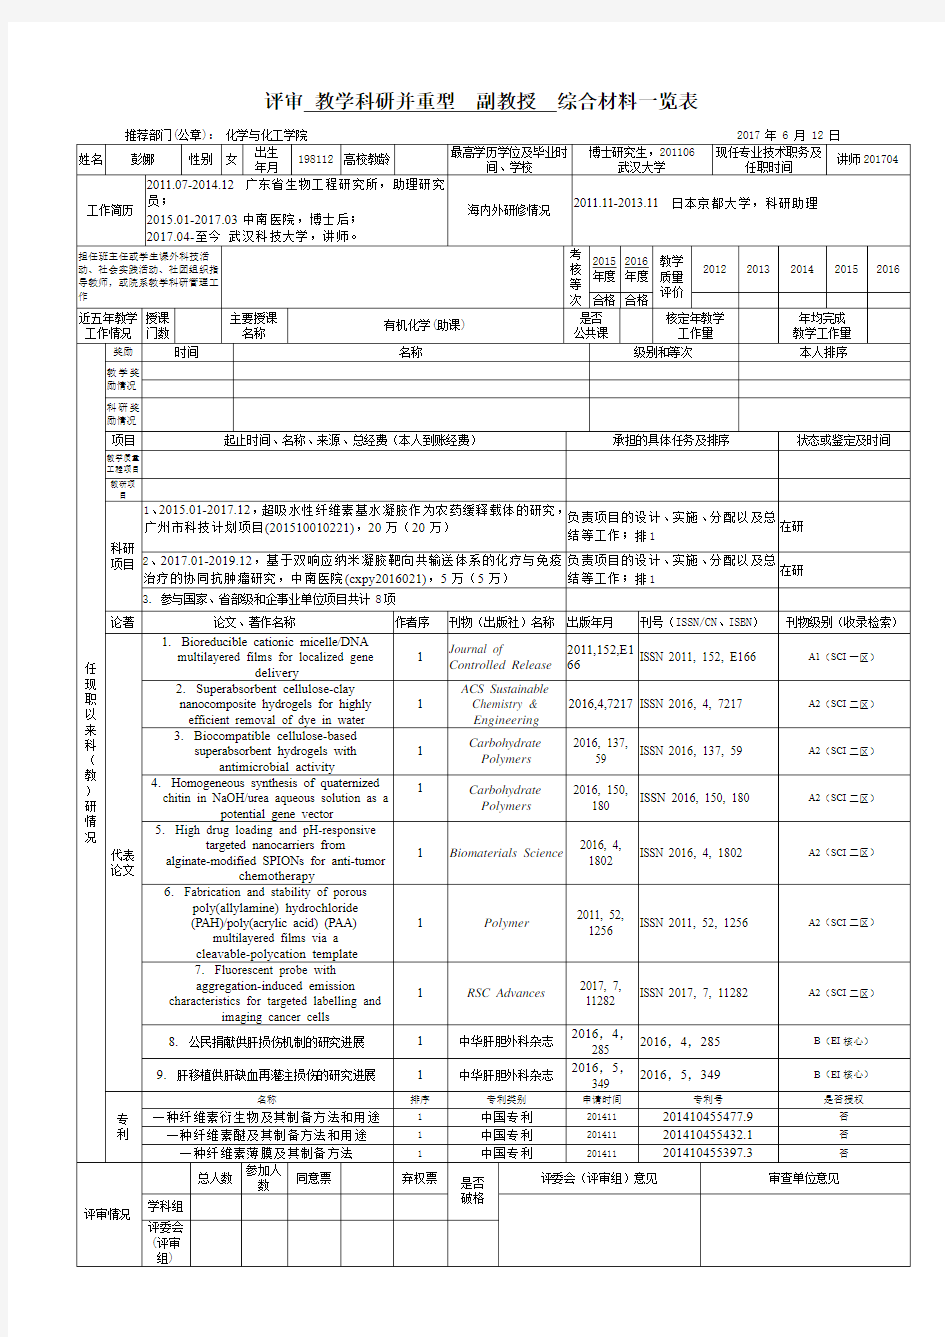 武汉科技大学推荐评审副教授综合材料一览表